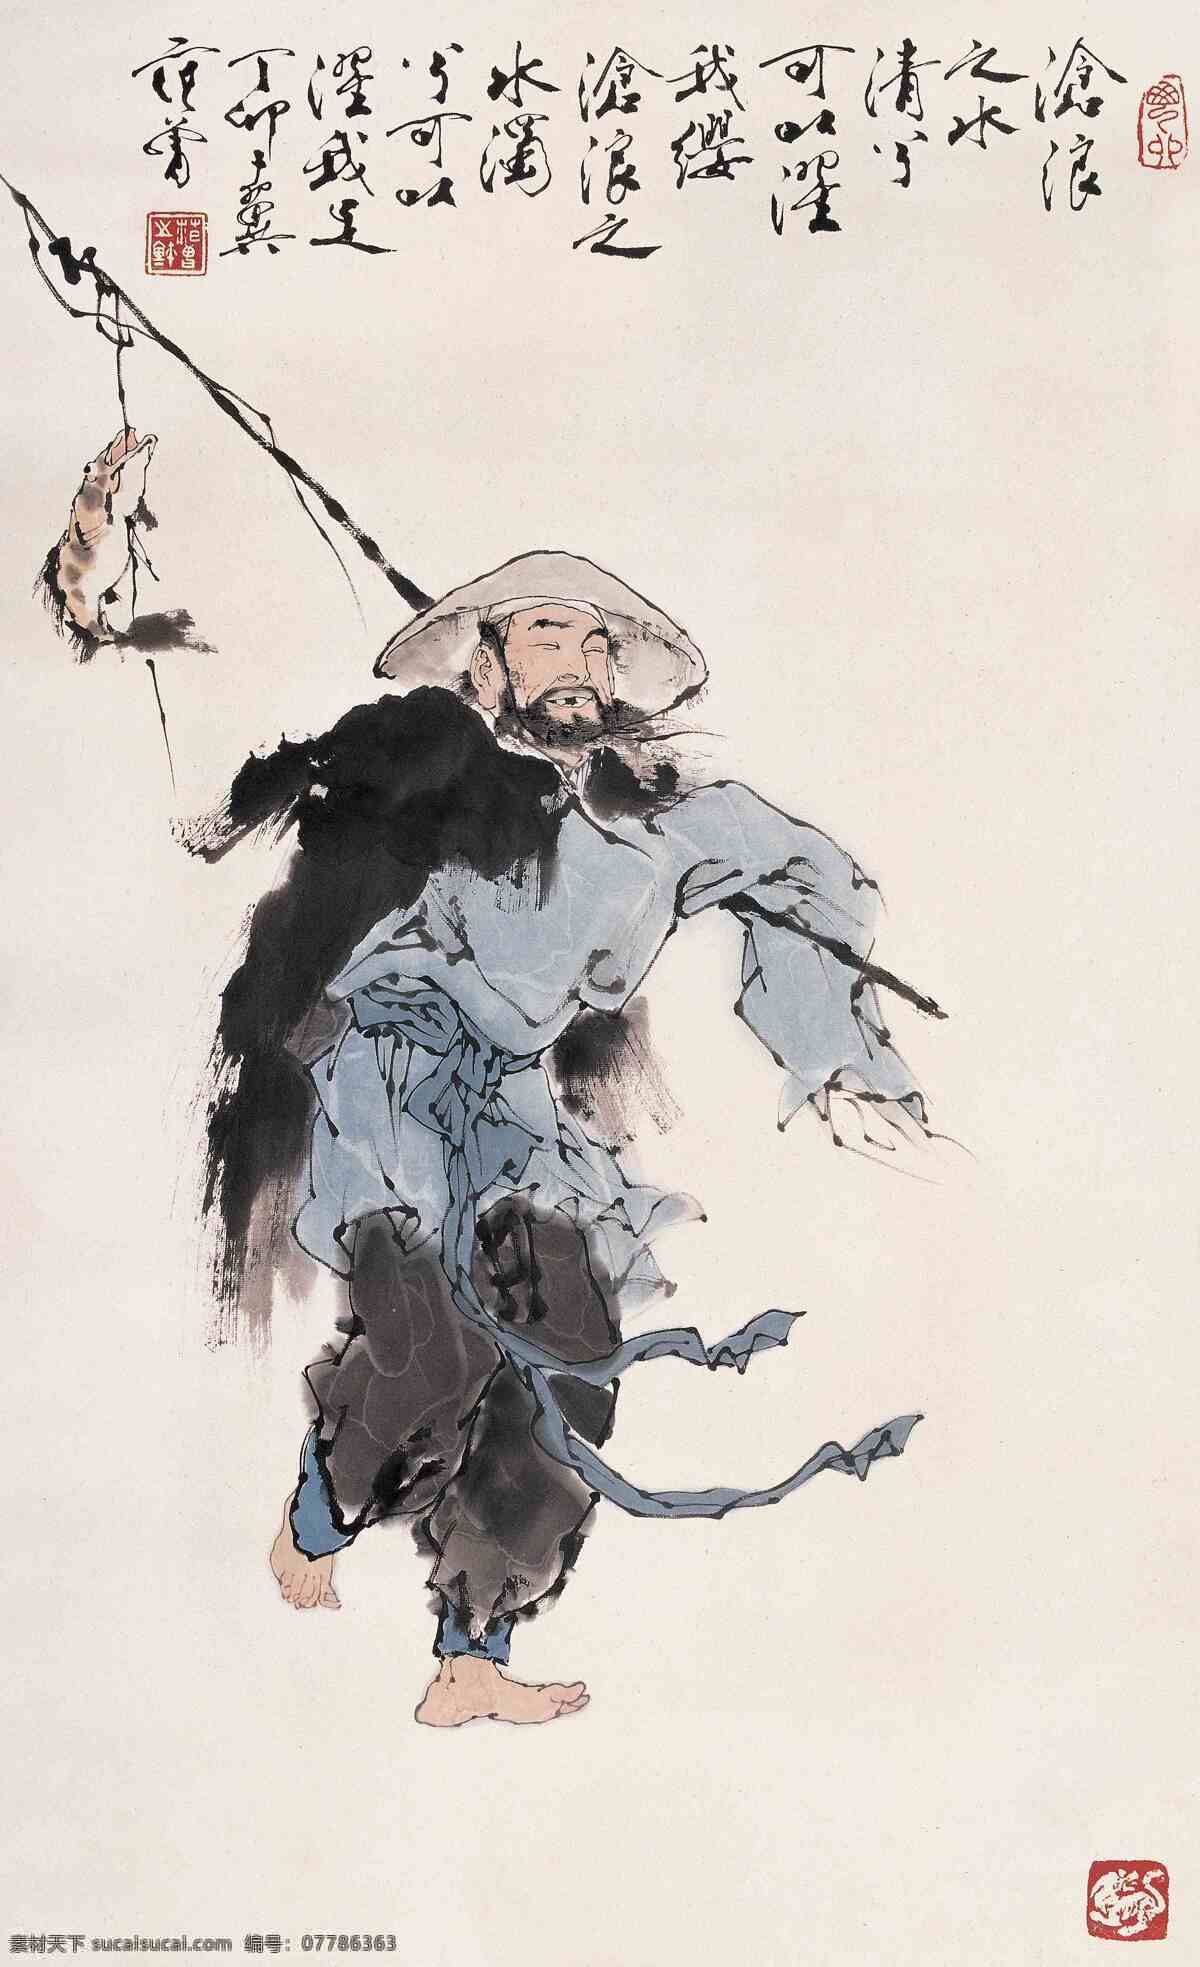 渔夫图 范曾作品 一条鲜鱼 斗笠 蓑衣 中国古代画 中国古画 文化艺术 绘画书法